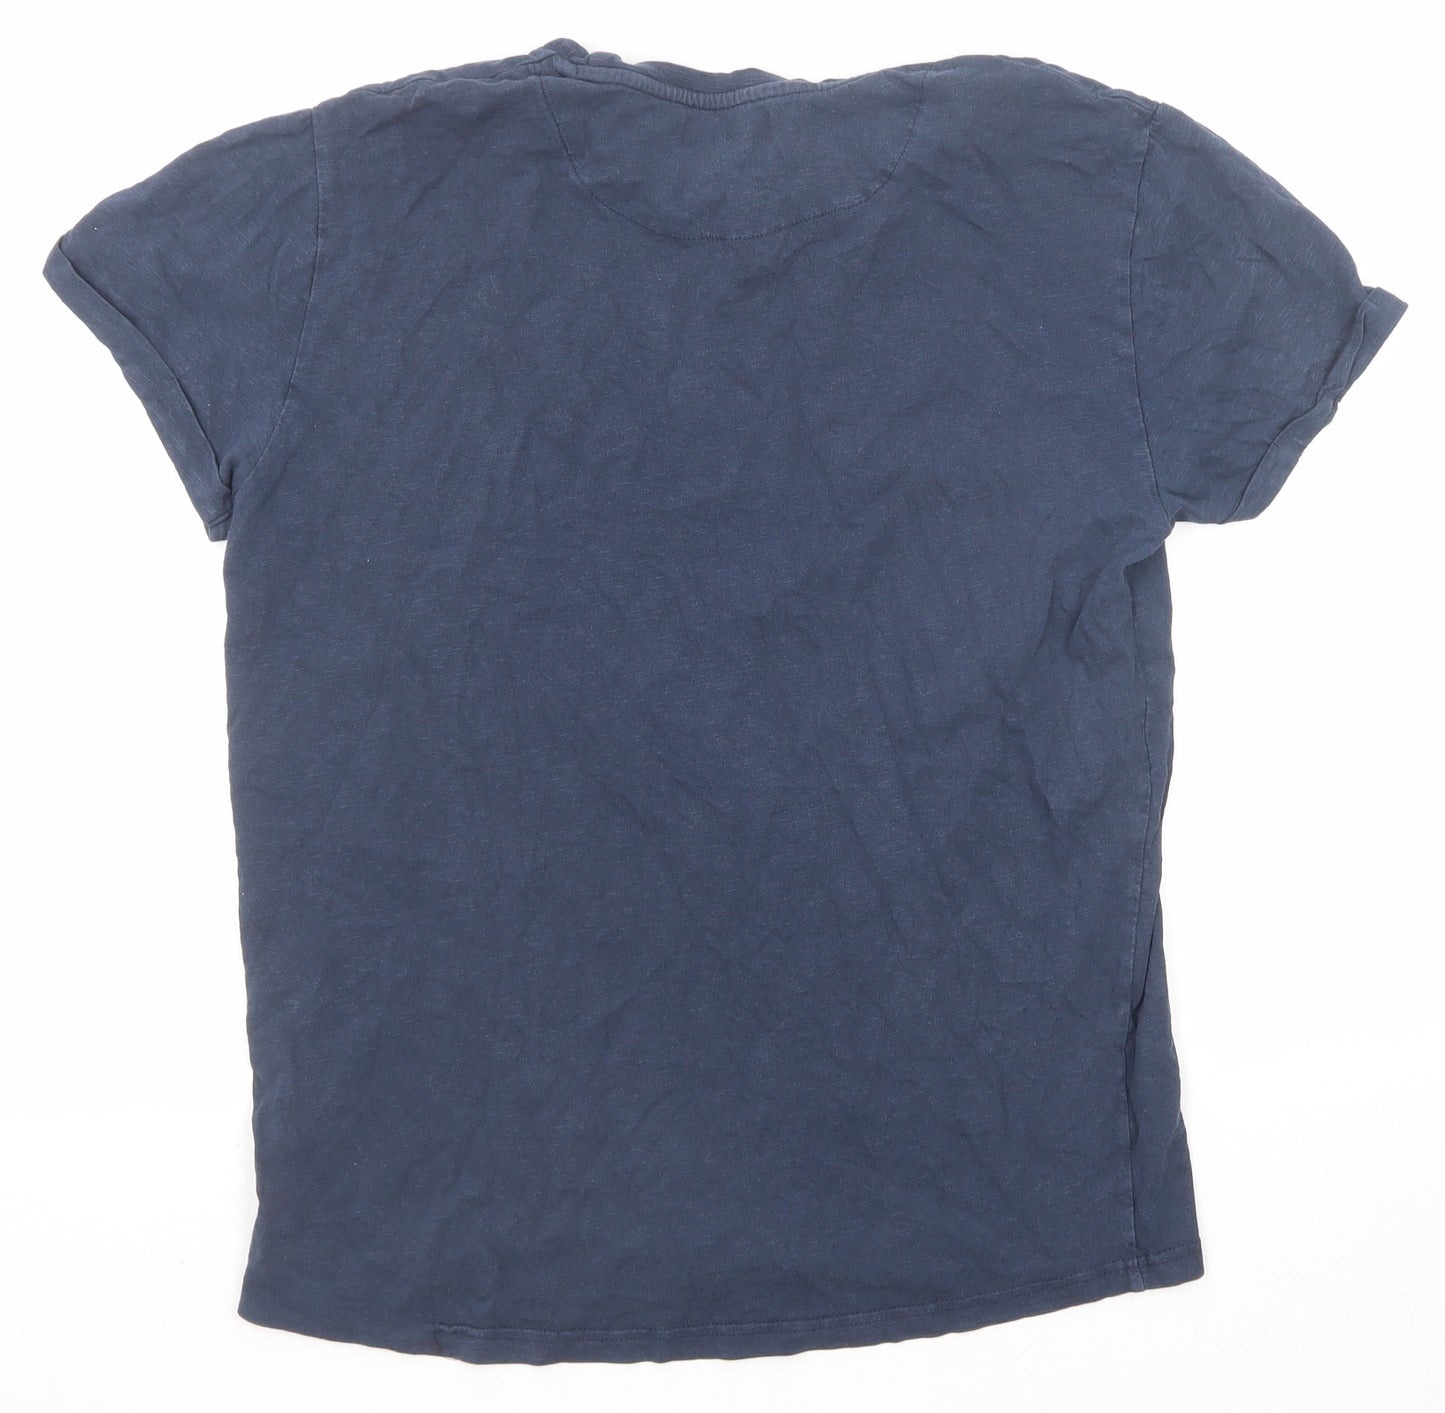 Clean Cut Copenhaged Mens Blue Cotton T-Shirt Size L Round Neck